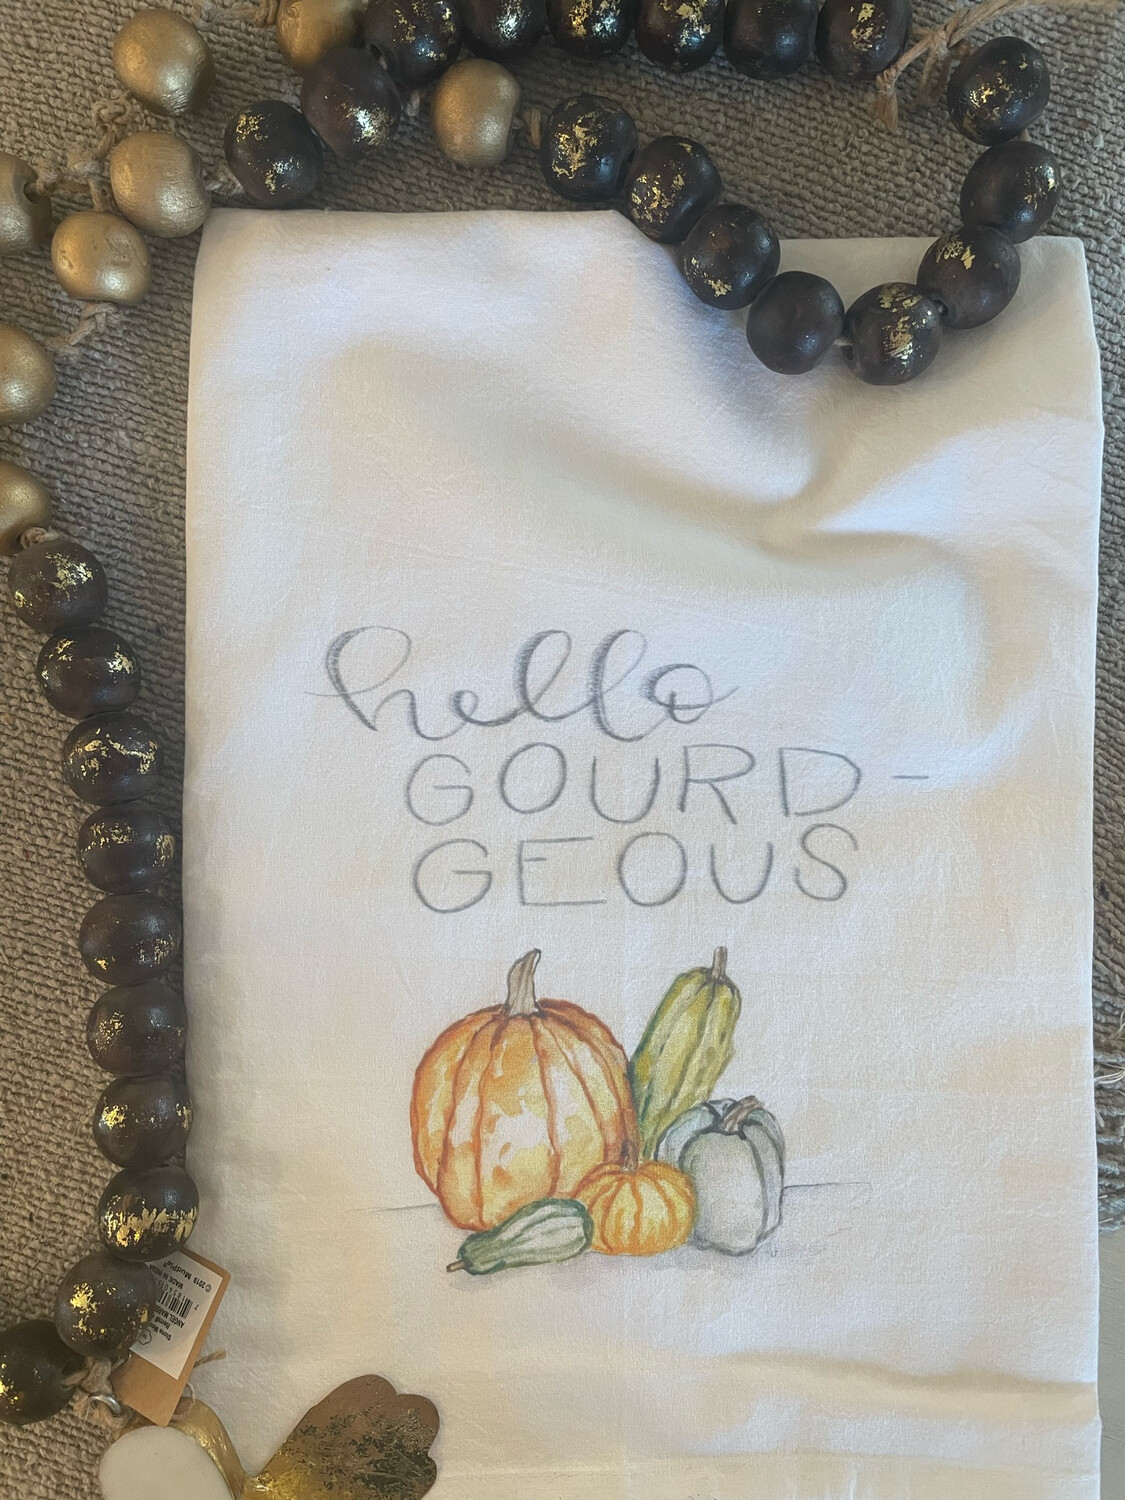 Hello Gourd-geous